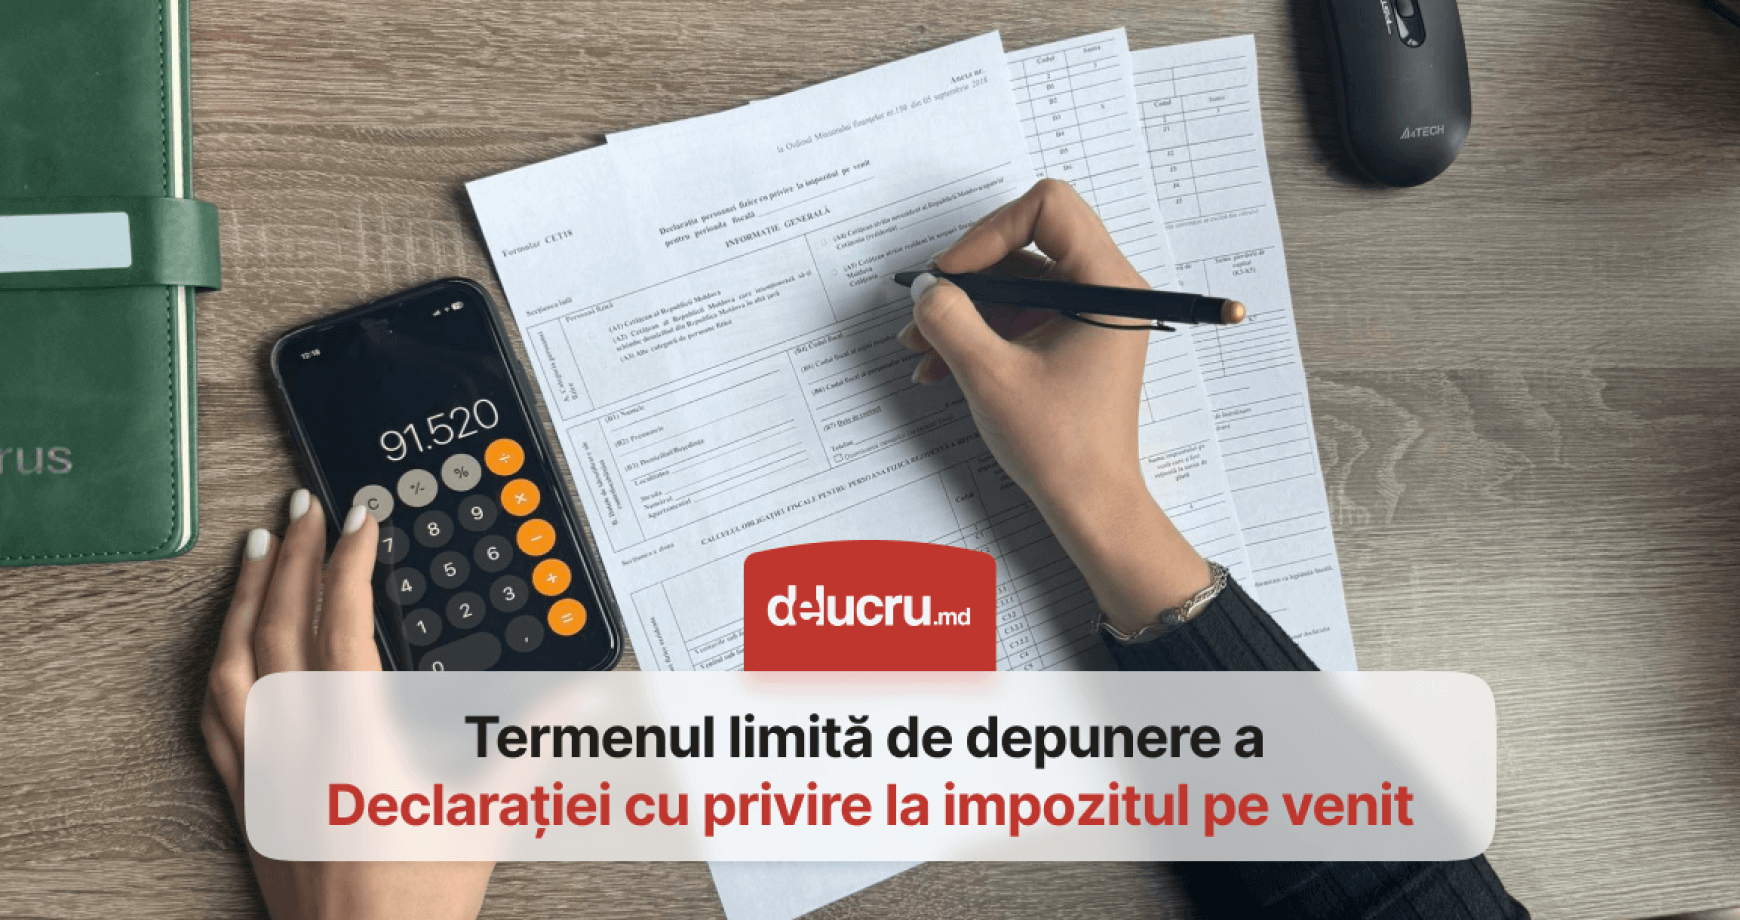 25 martie - termenul limită de prezentare a Declarației cu privire la impozitul pe venit pentru persoanele juridice